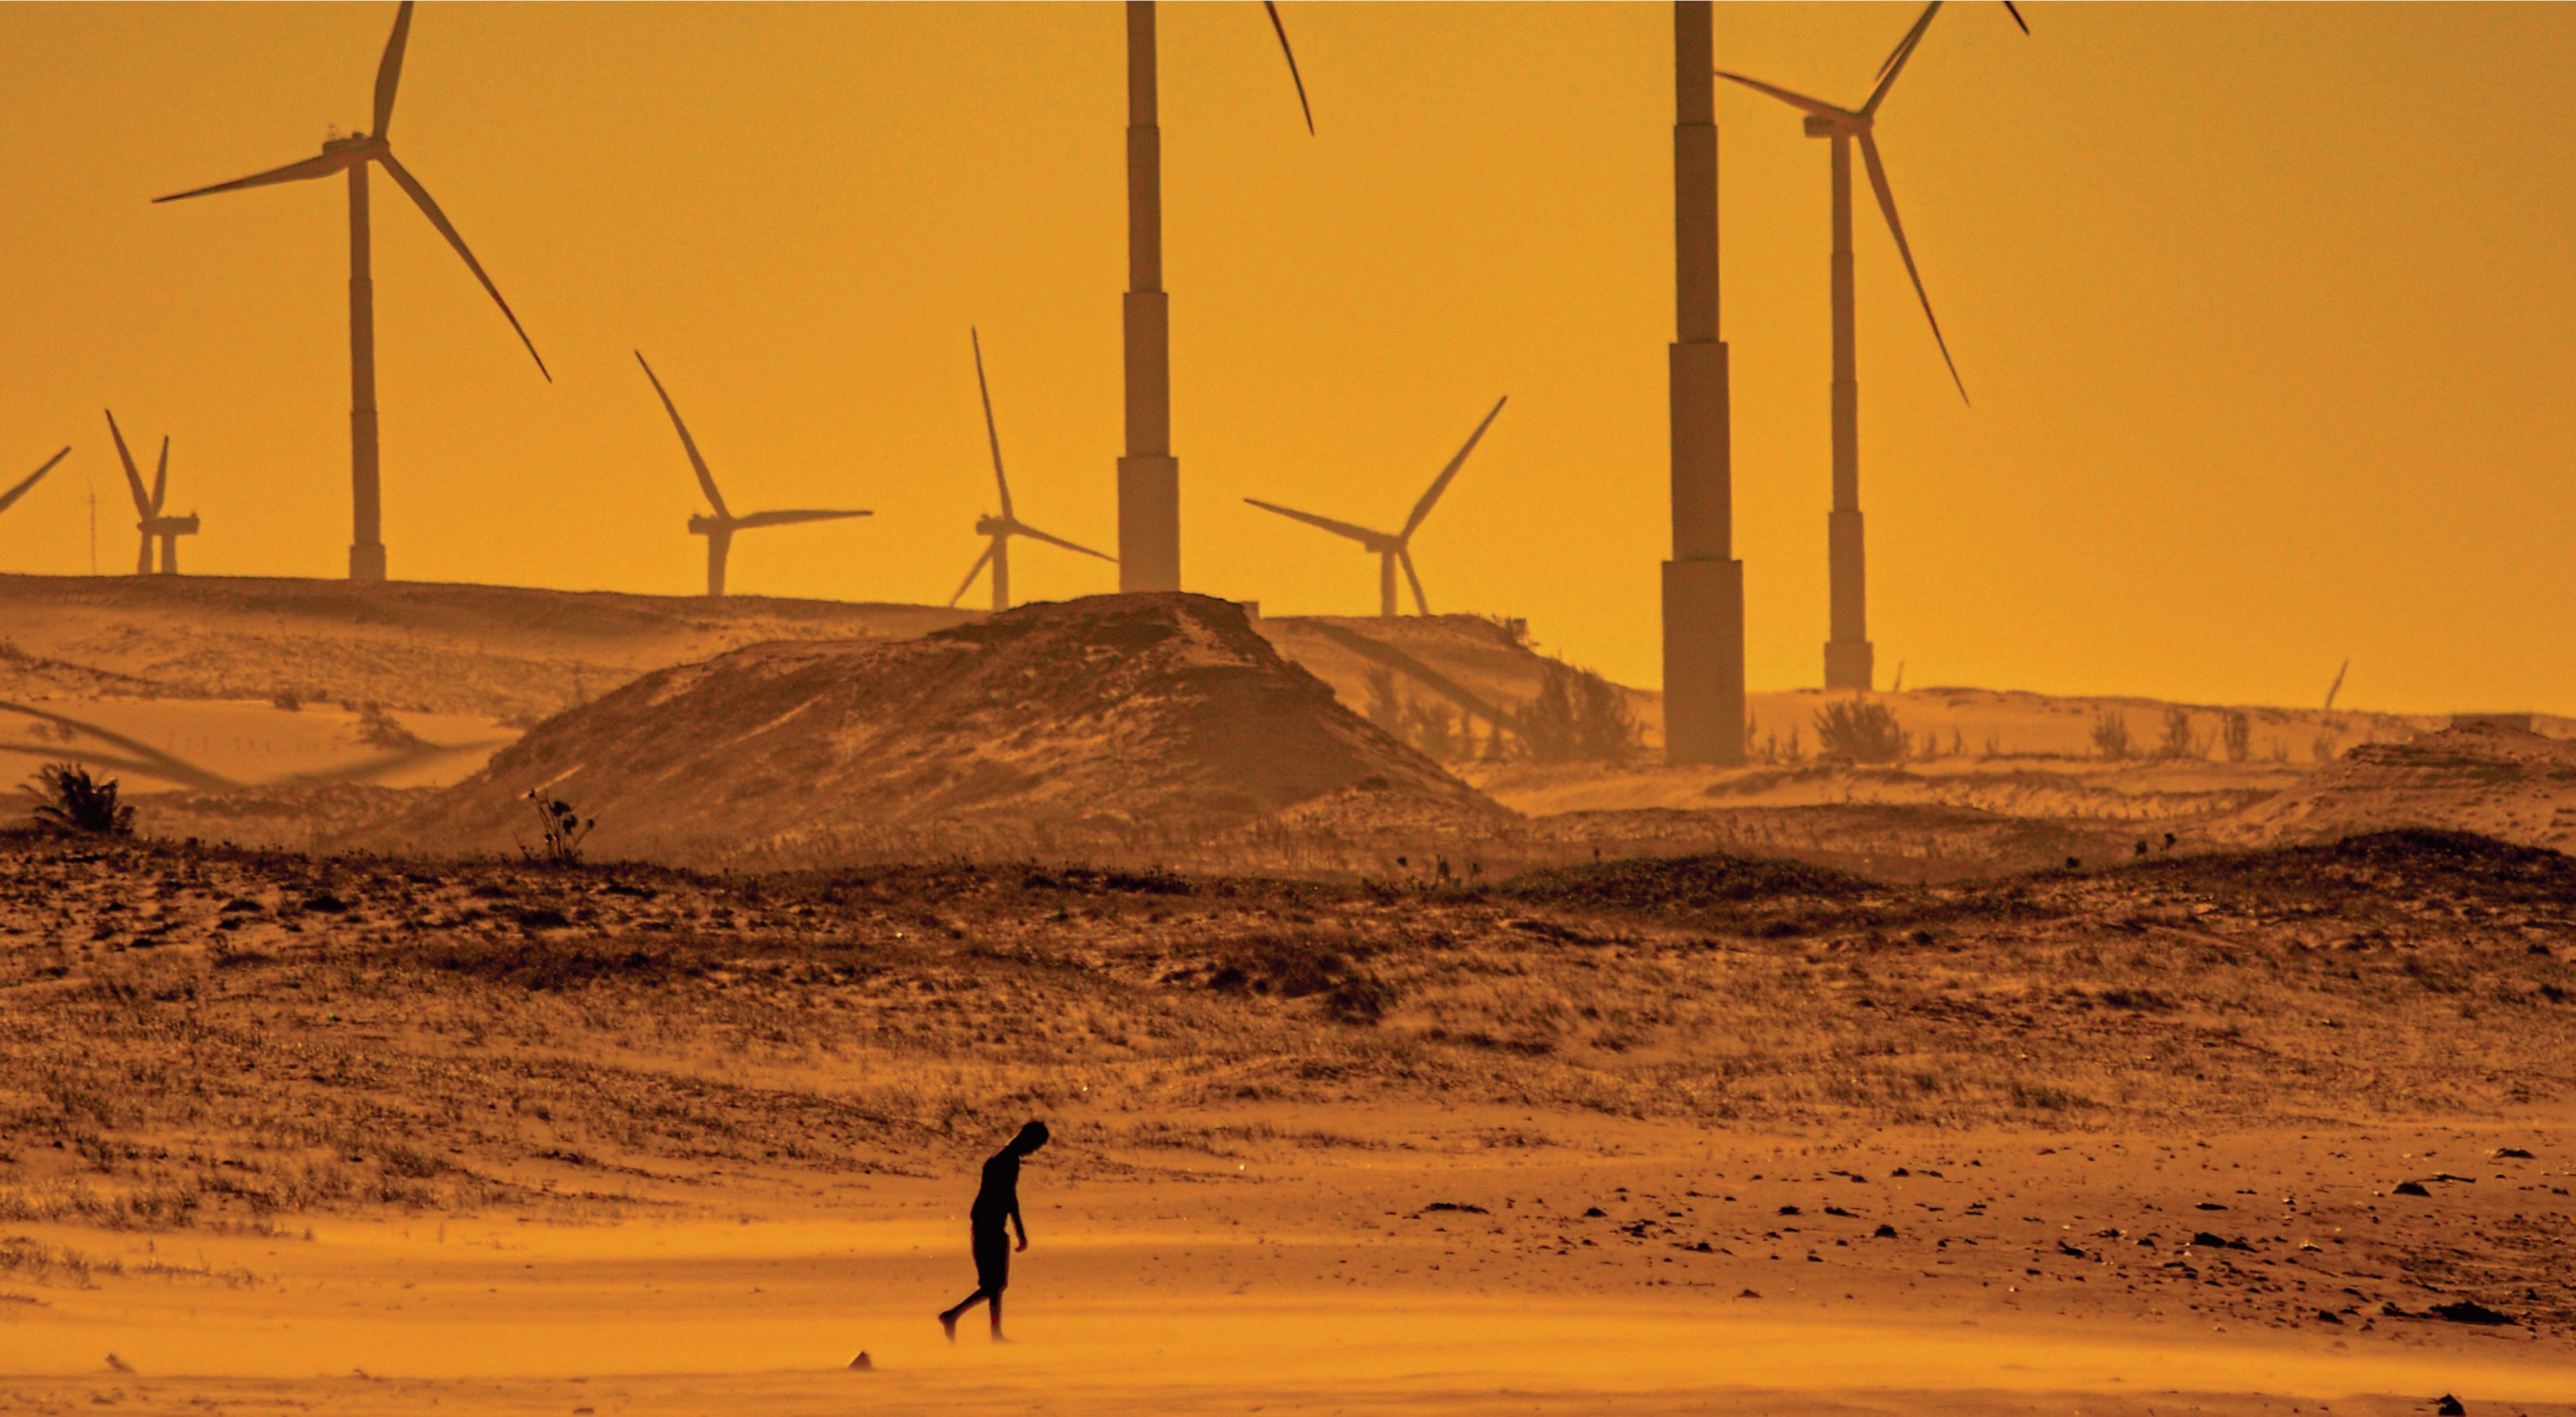  Pessoa andando em paisagem desértica a frente de geradores de energia eólica.